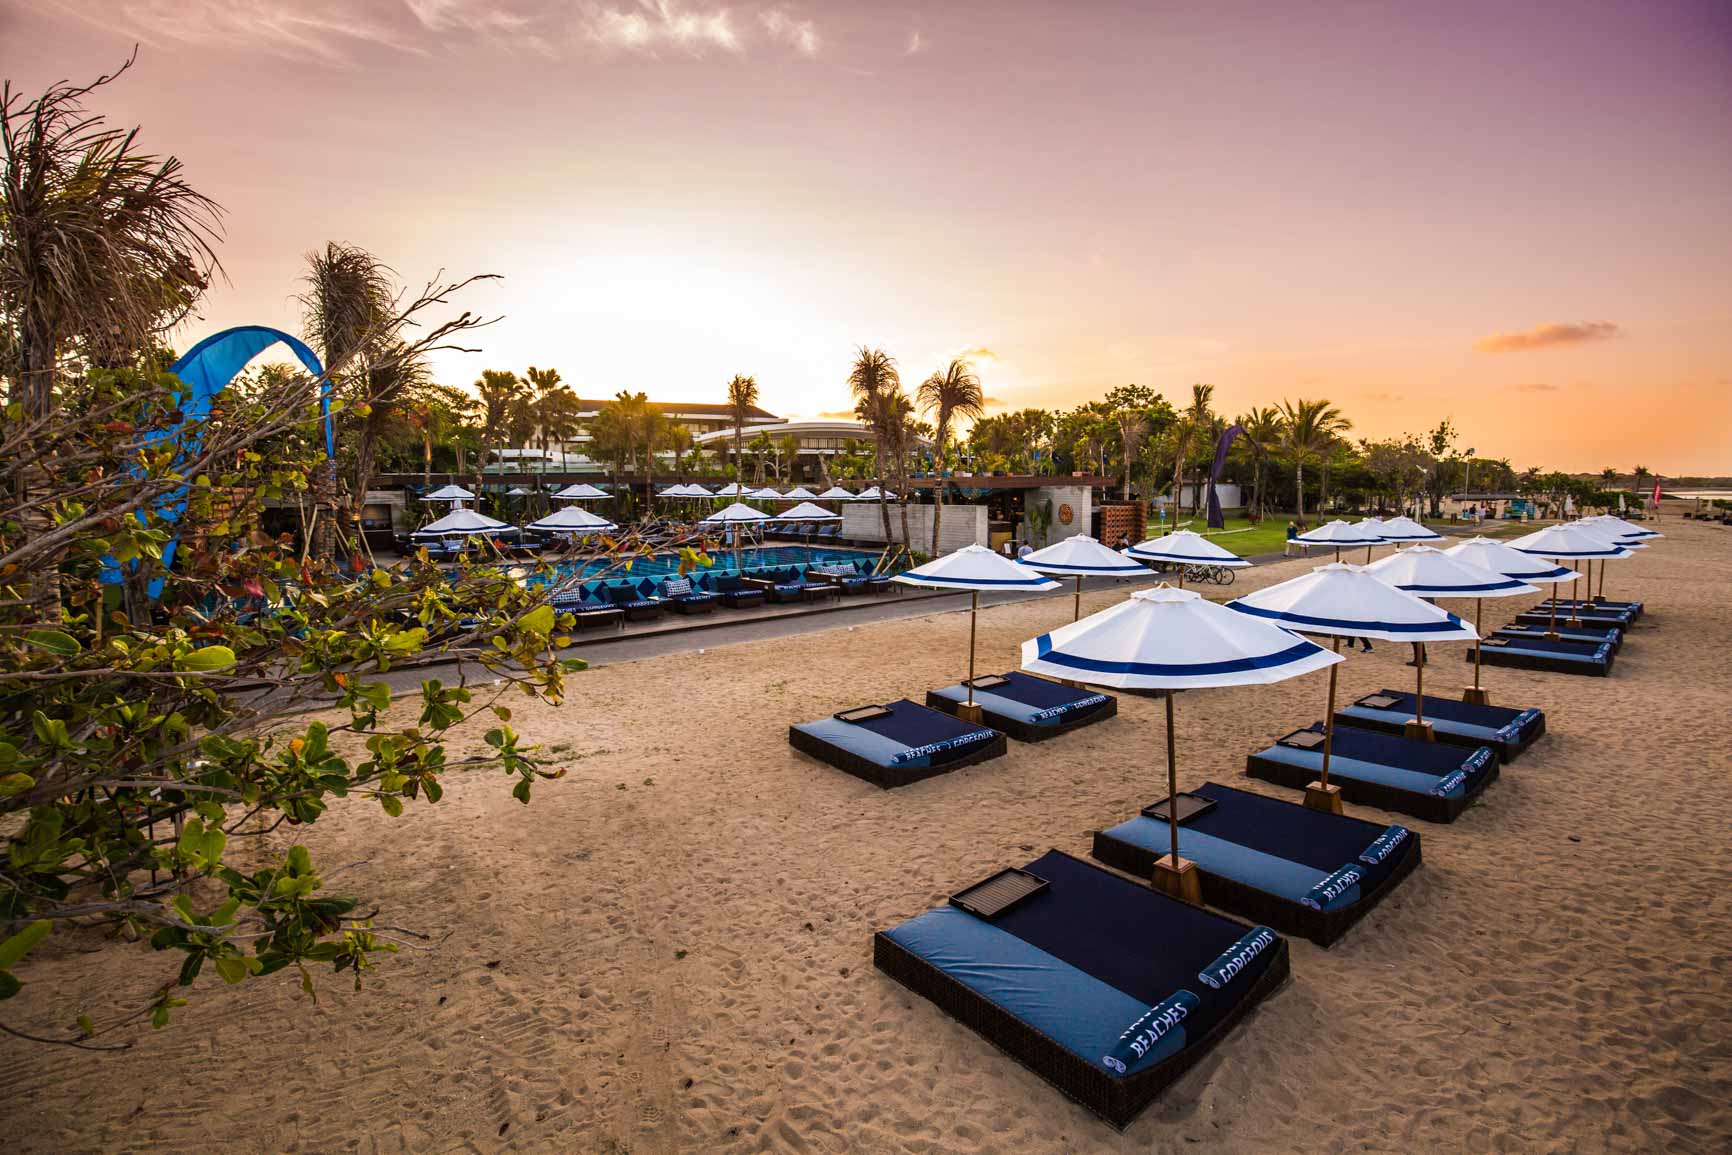 Manarai Beach Club, Destinasi Wisata Baru di Bali